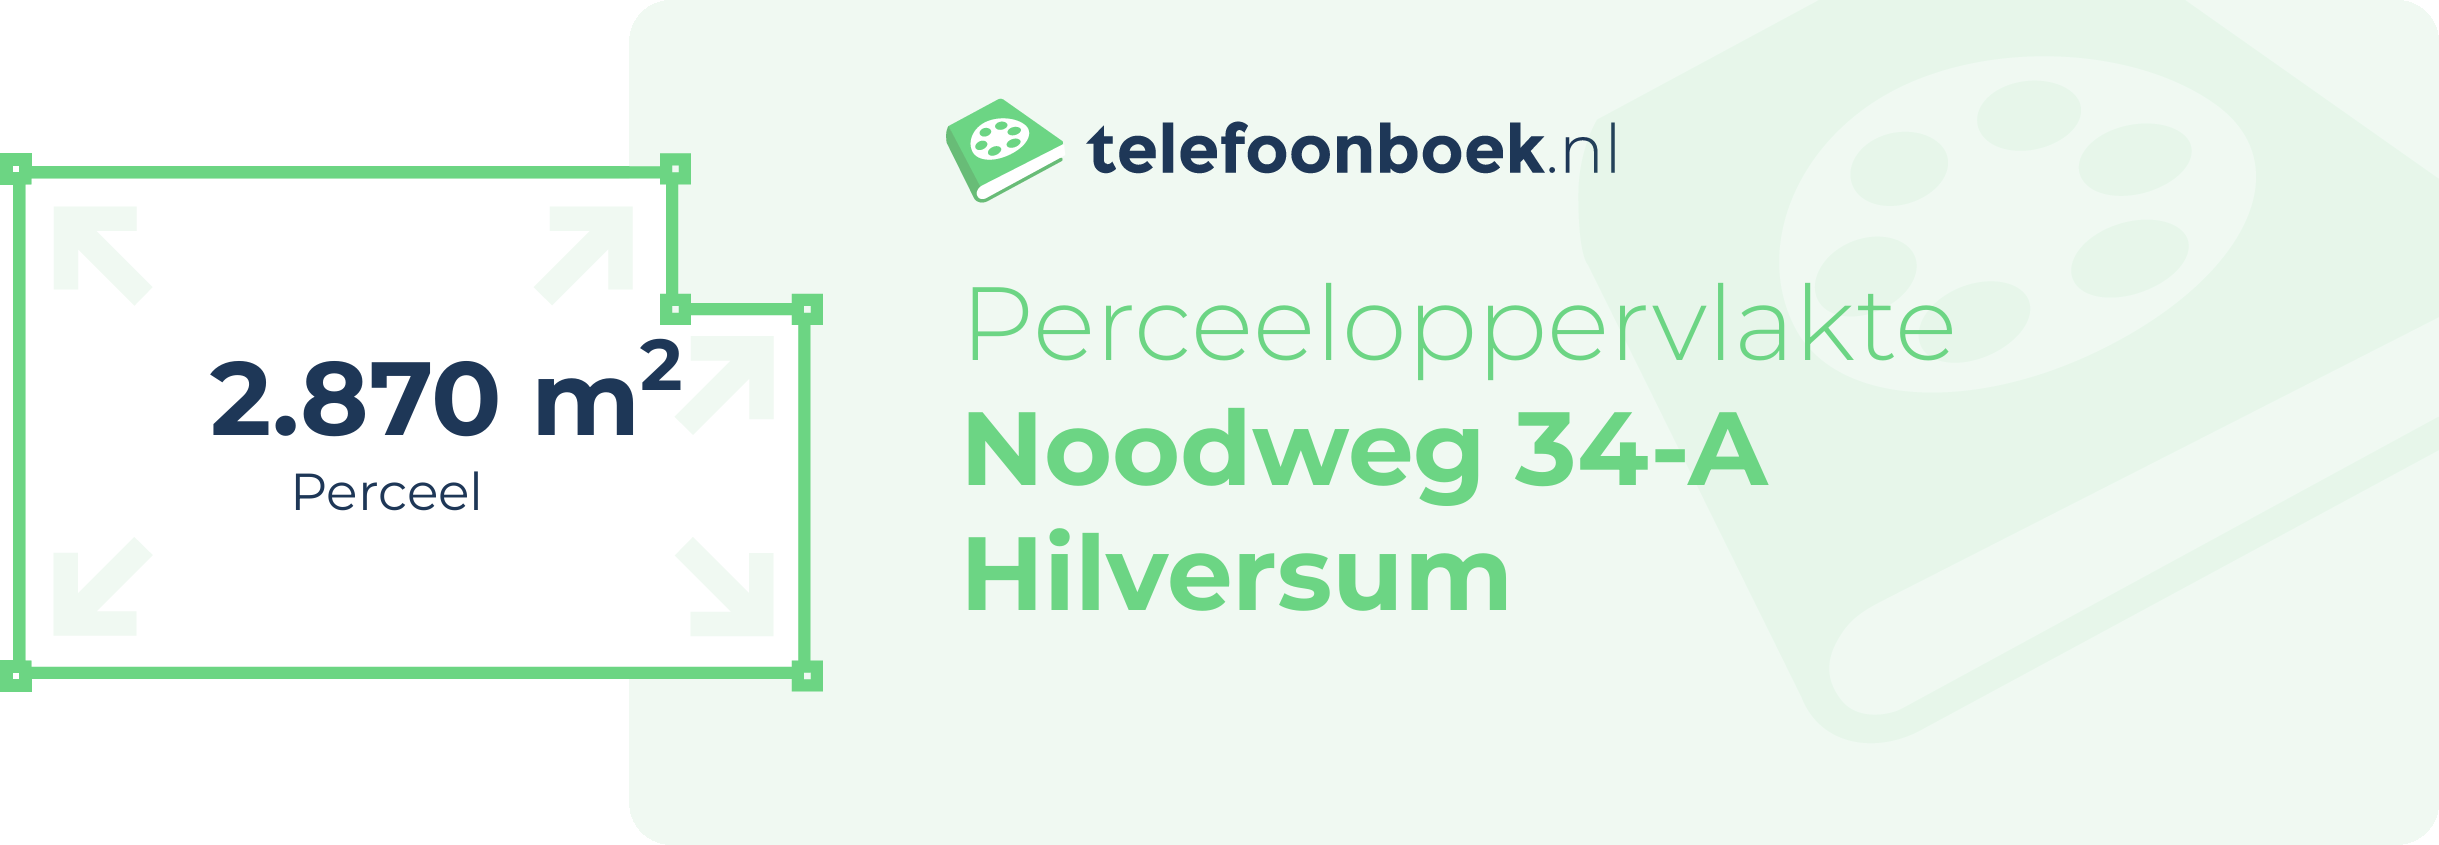 Perceeloppervlakte Noodweg 34-A Hilversum